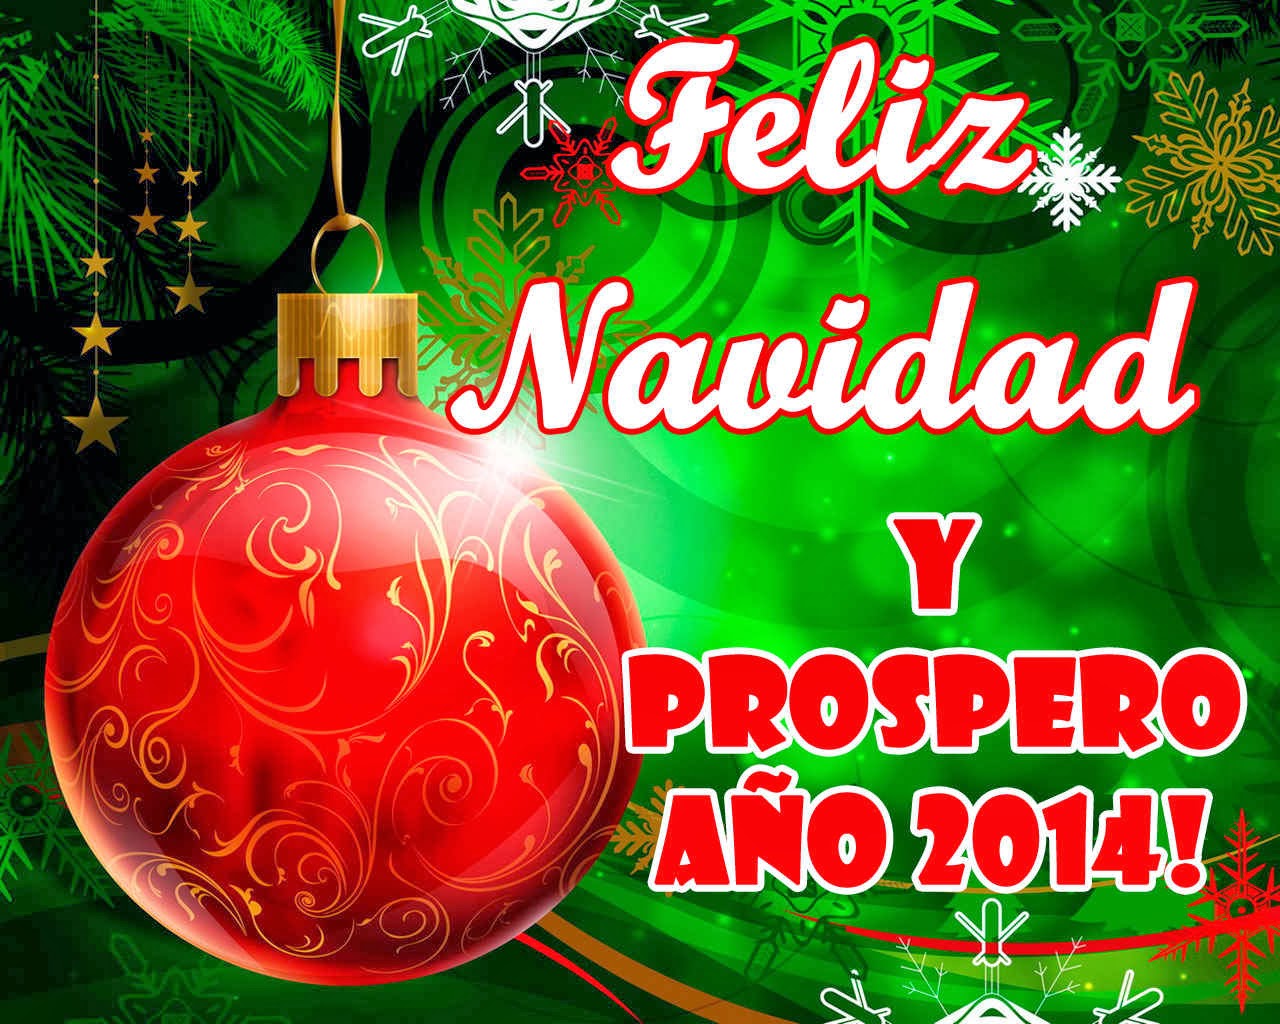 Próspero año nuevo 2014